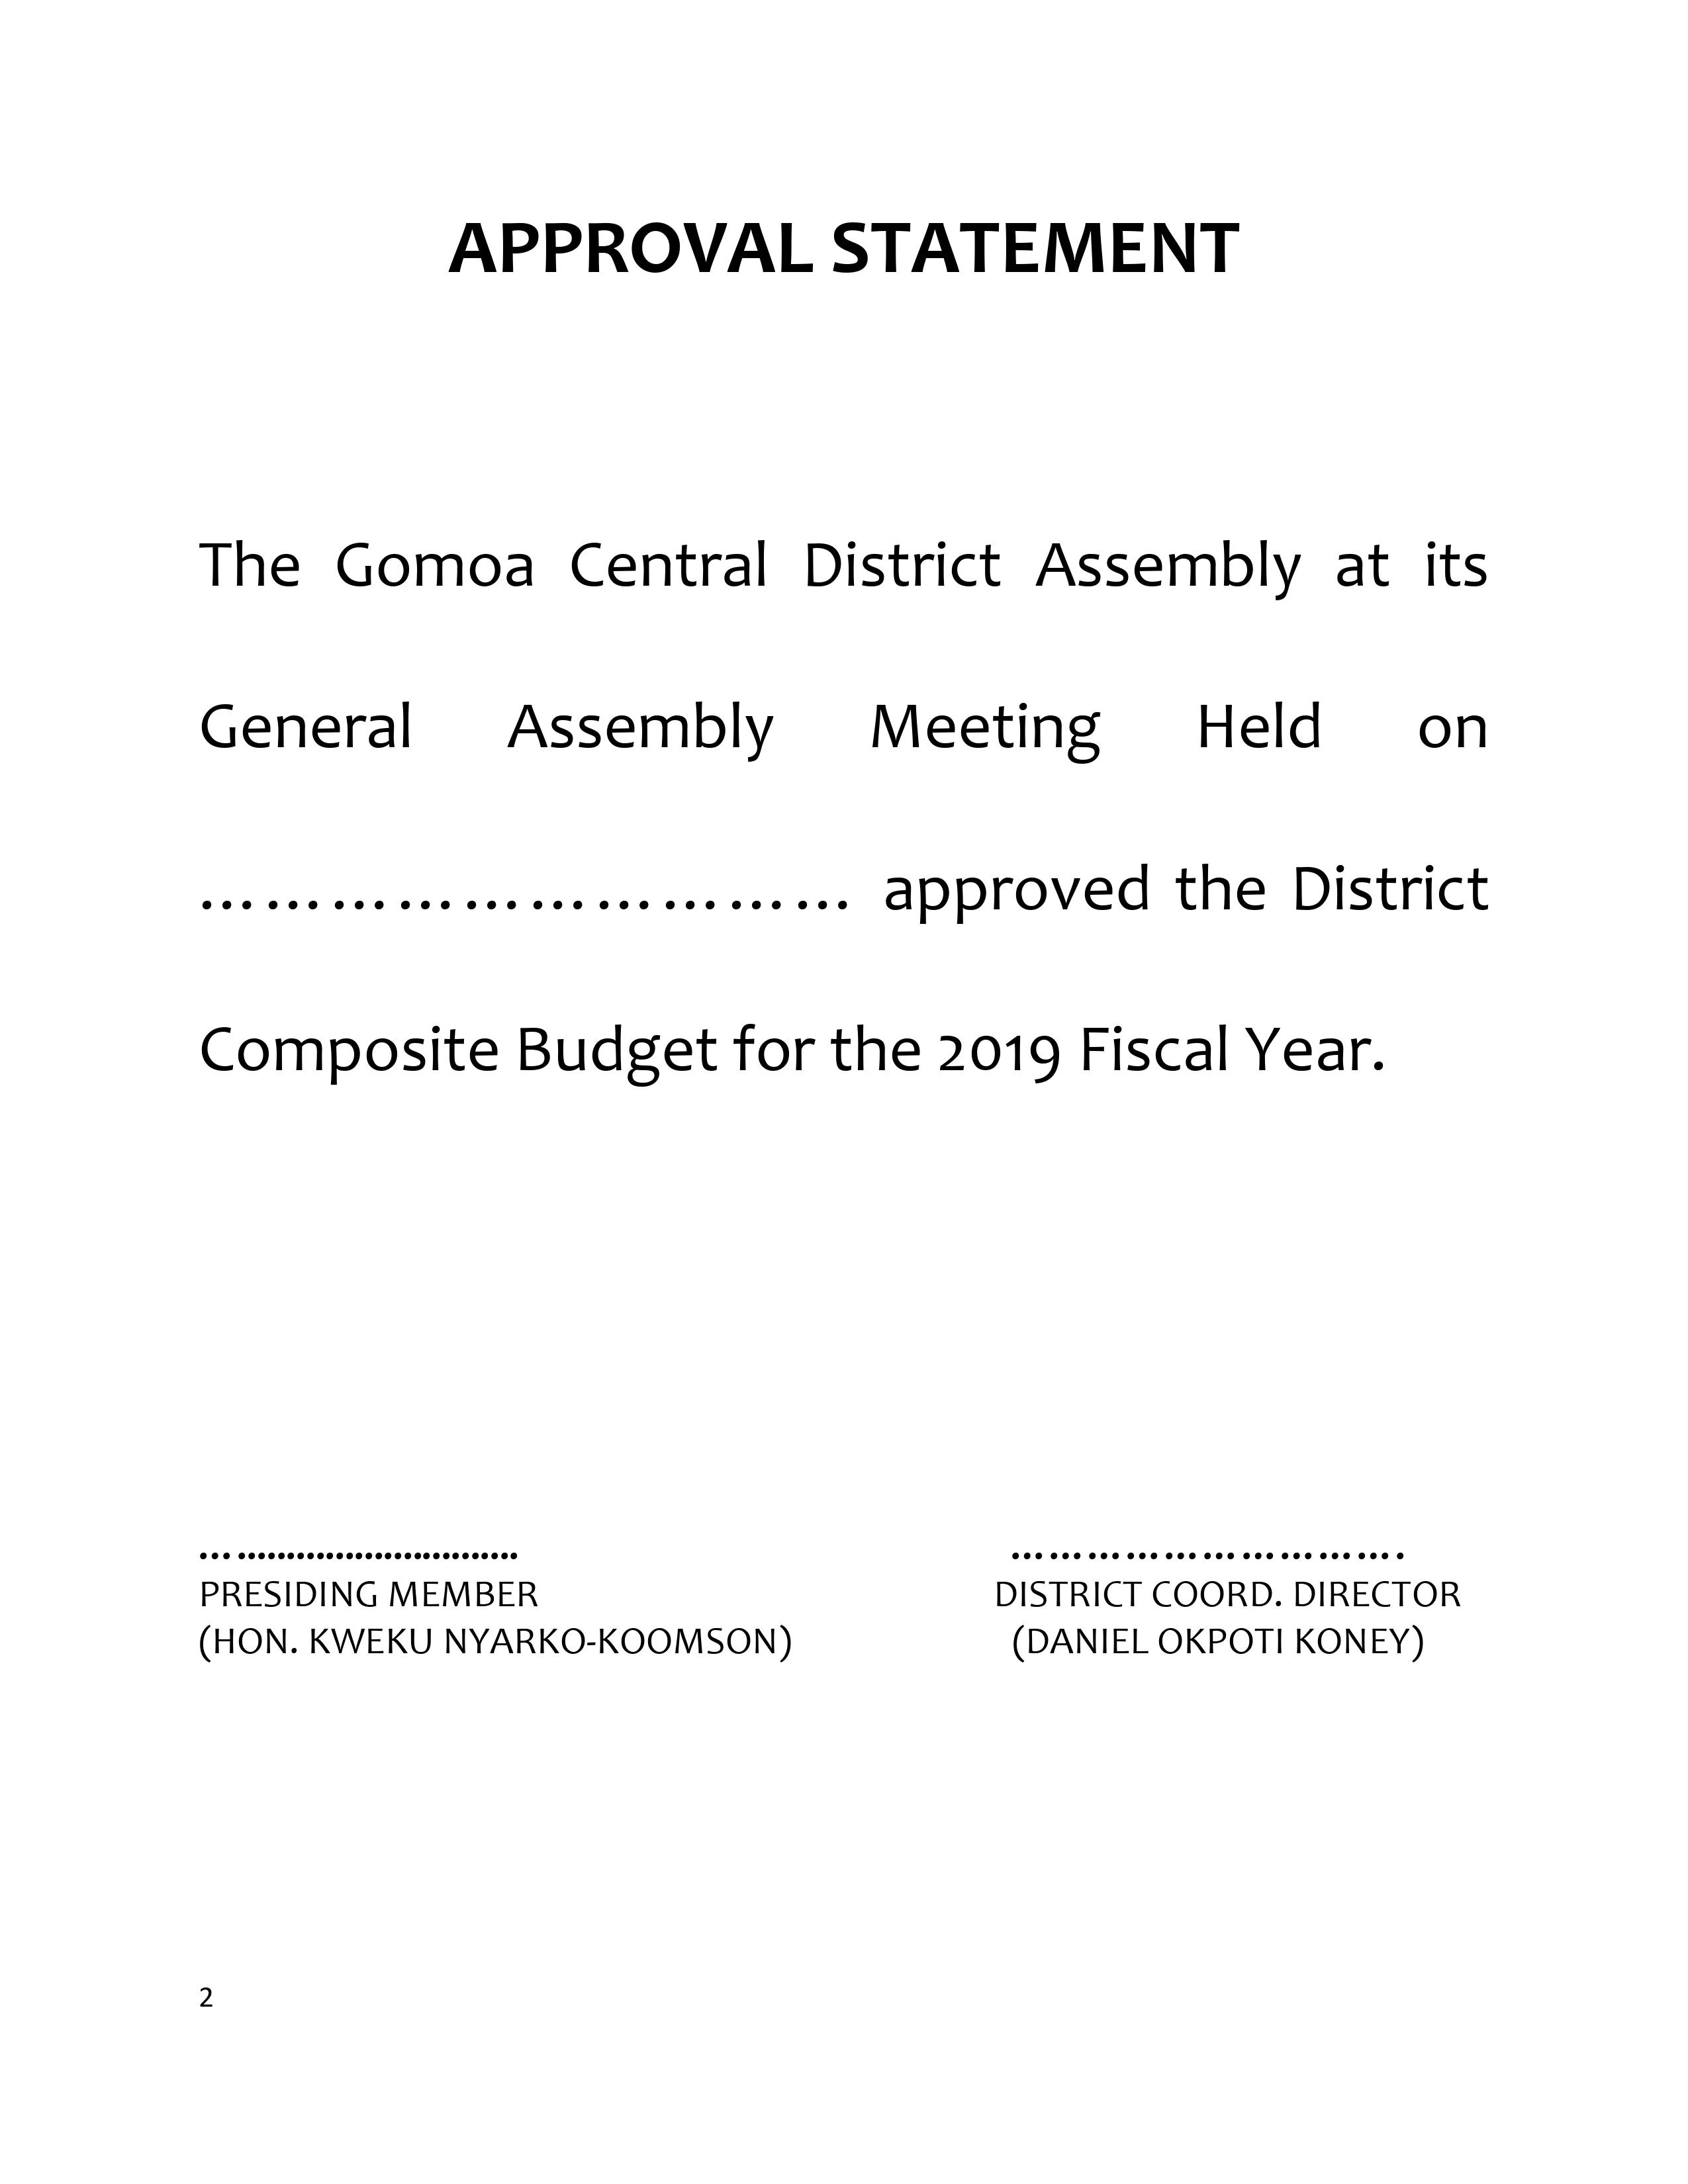 Gomoa Central Composite Budget 2019(2)